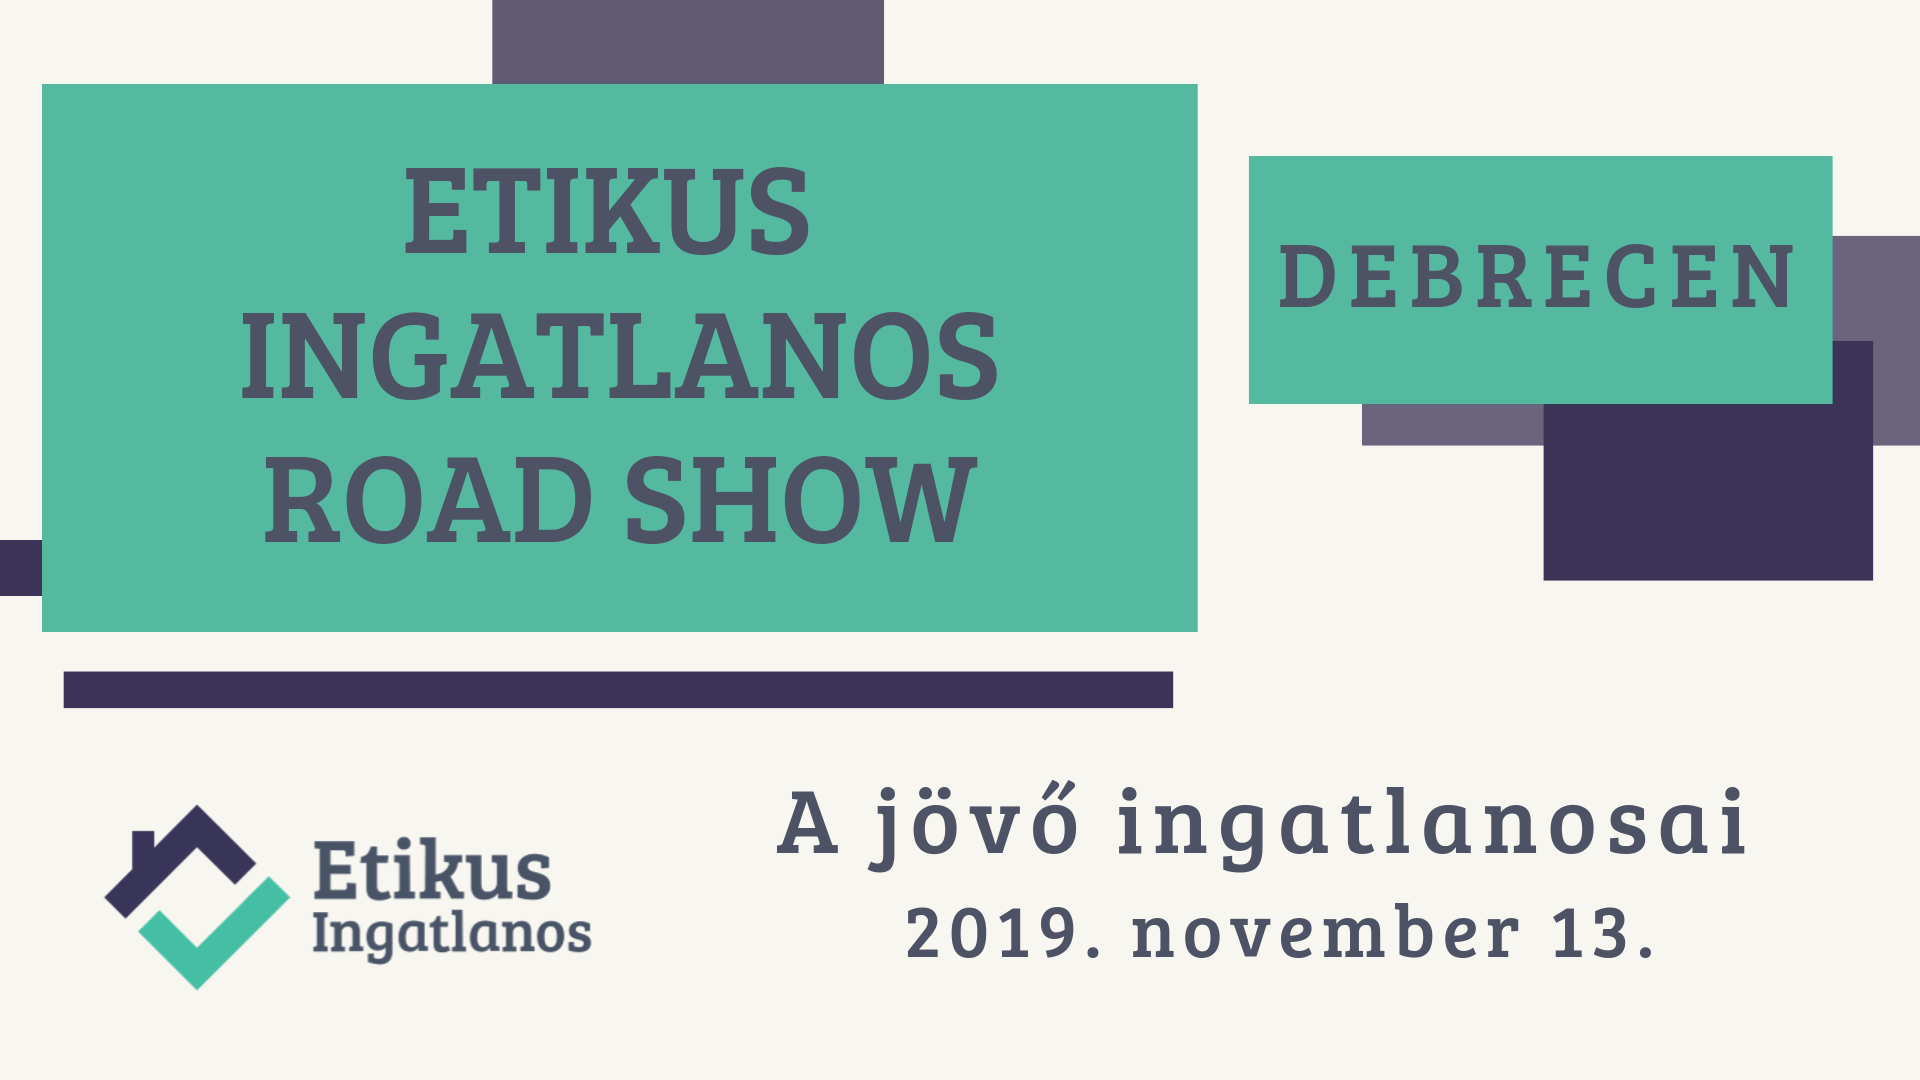 Egy képen a közelgő Etikus Ingatlanos RoadShow - 2019 november 13. - Debrecen adatai láthatóak.